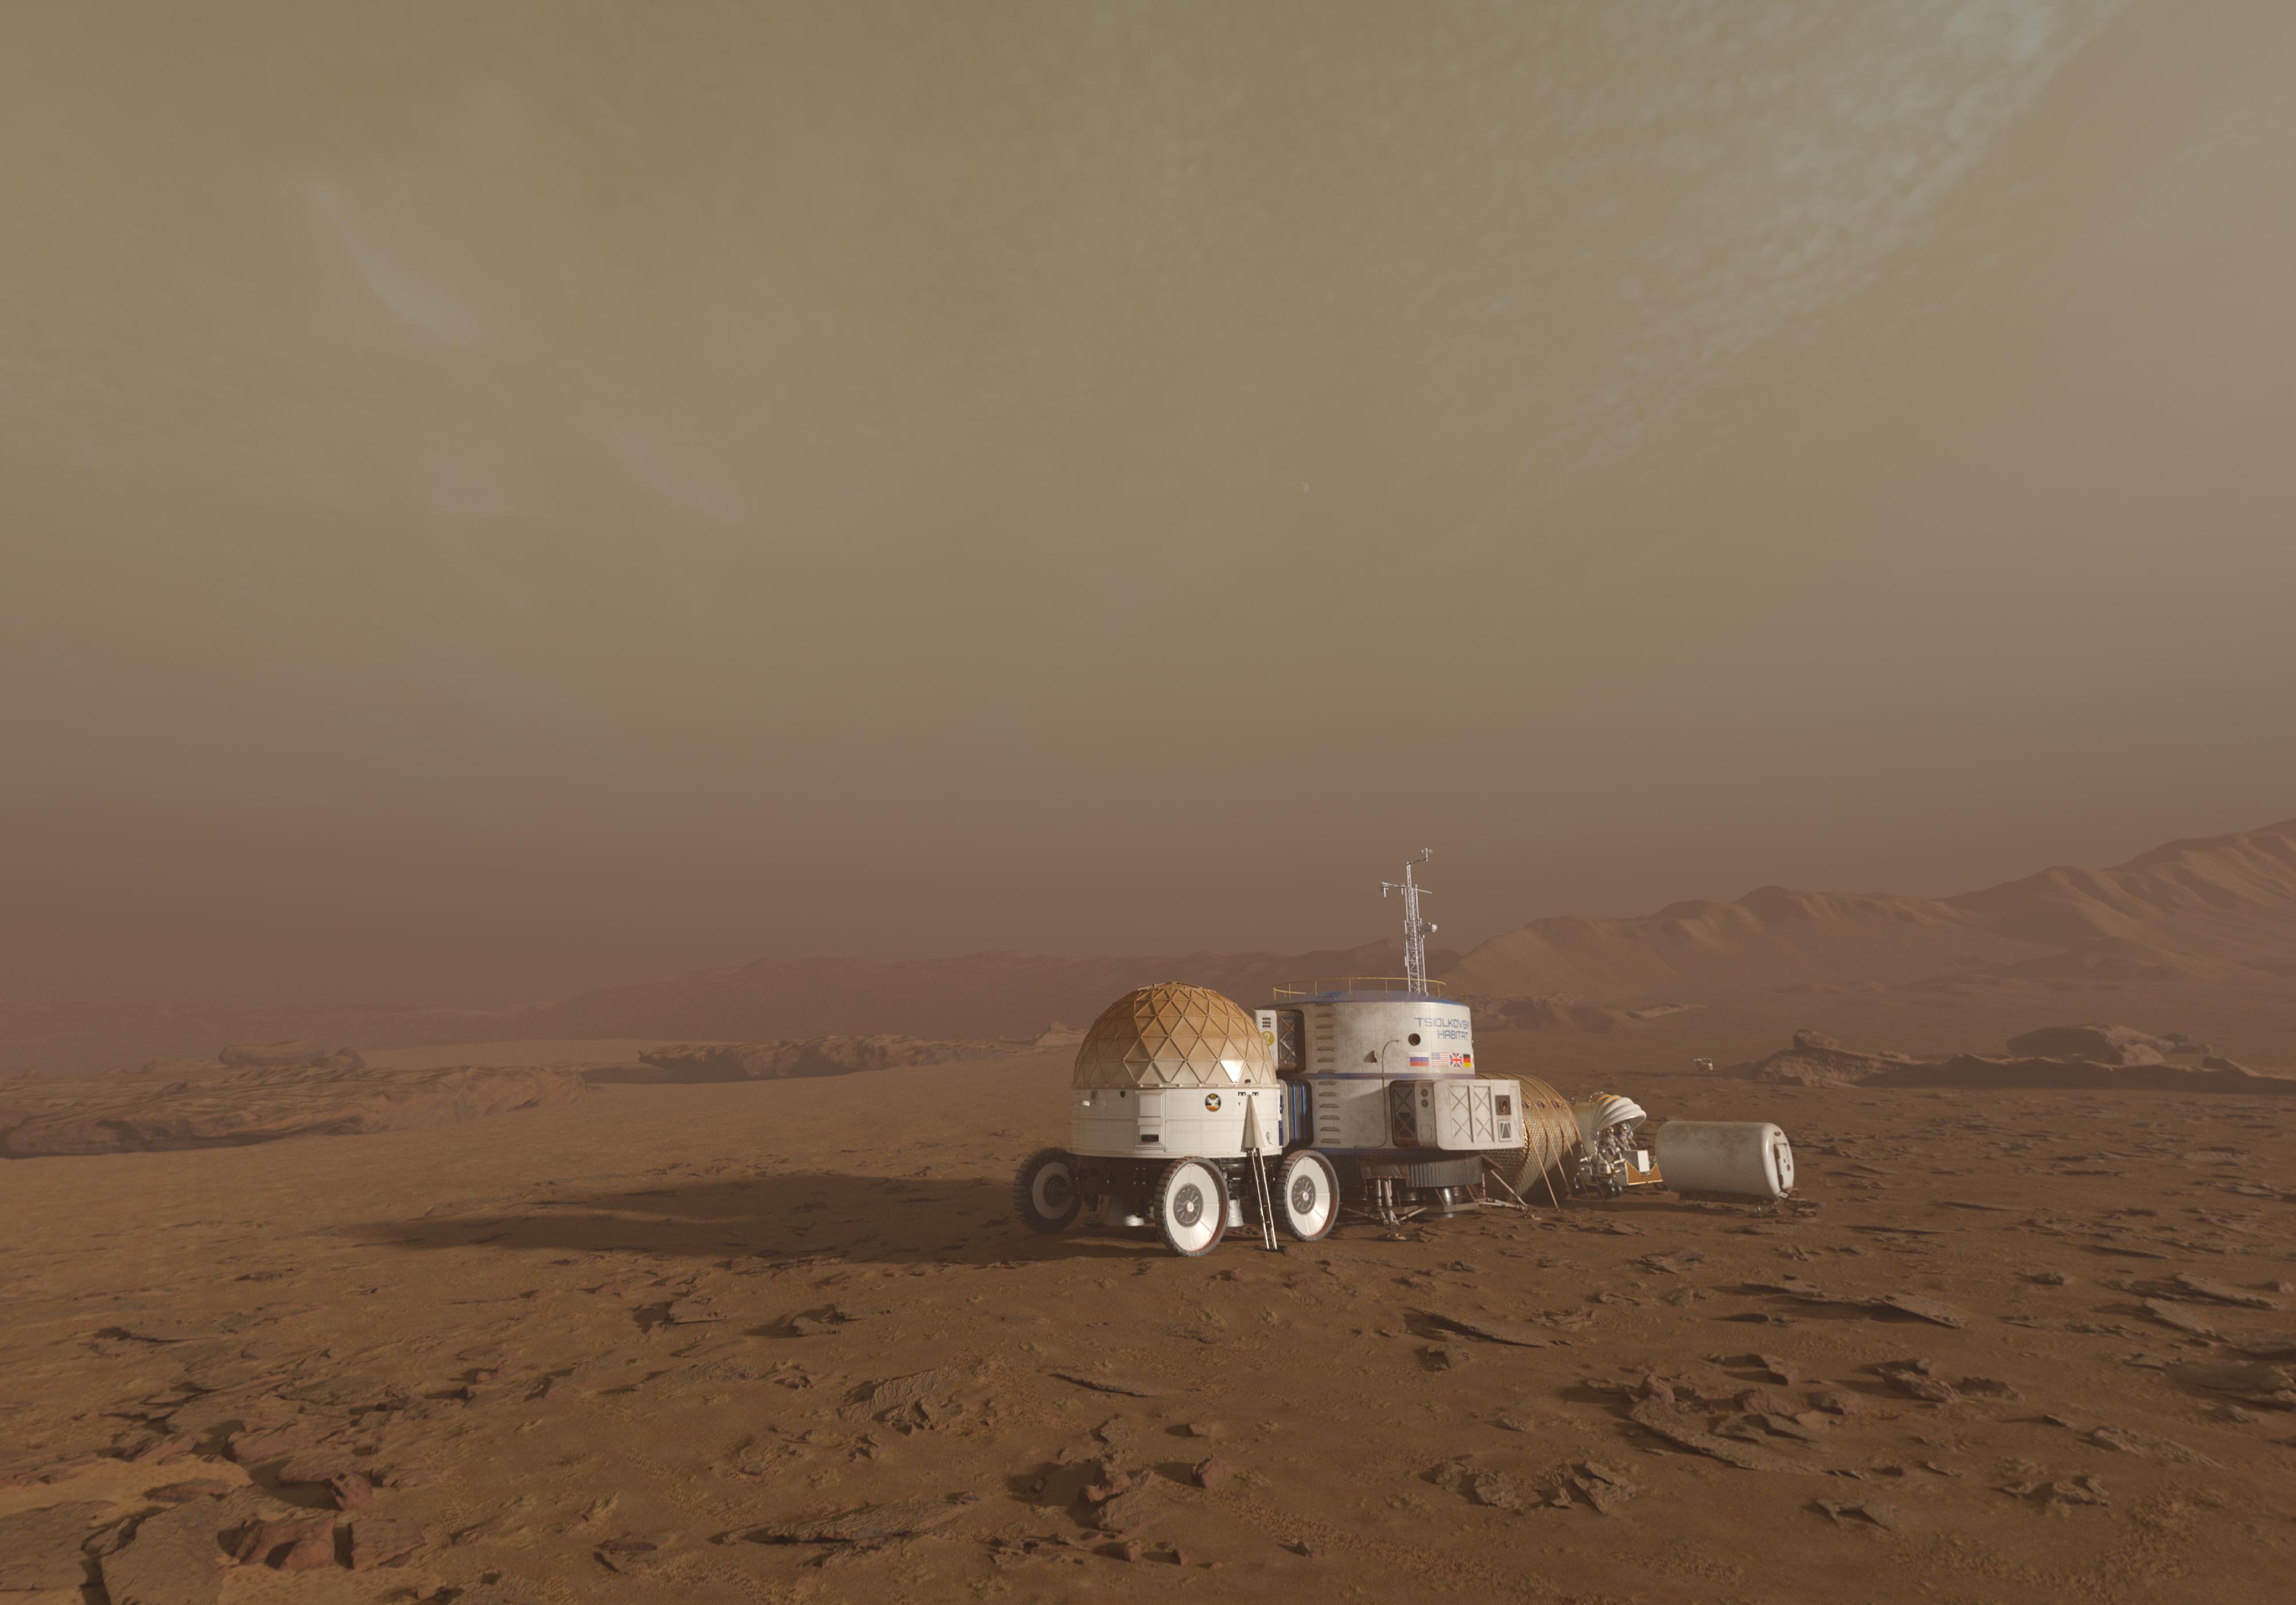 香港太空馆天象厅五月一日起放映全新天象节目《火星千日行》，让观众踏上虚拟旅程，跟随太空人展开为期1,001日的首次载人登陆火星虚构任务，一同探索这红色行星。图示节目中太空人在火星上的基地，它由多个组件组建而成。居住舱的顶部设置了一个气象站，用作监测火星上的大气状况。（图片来源：© Mirage3D）